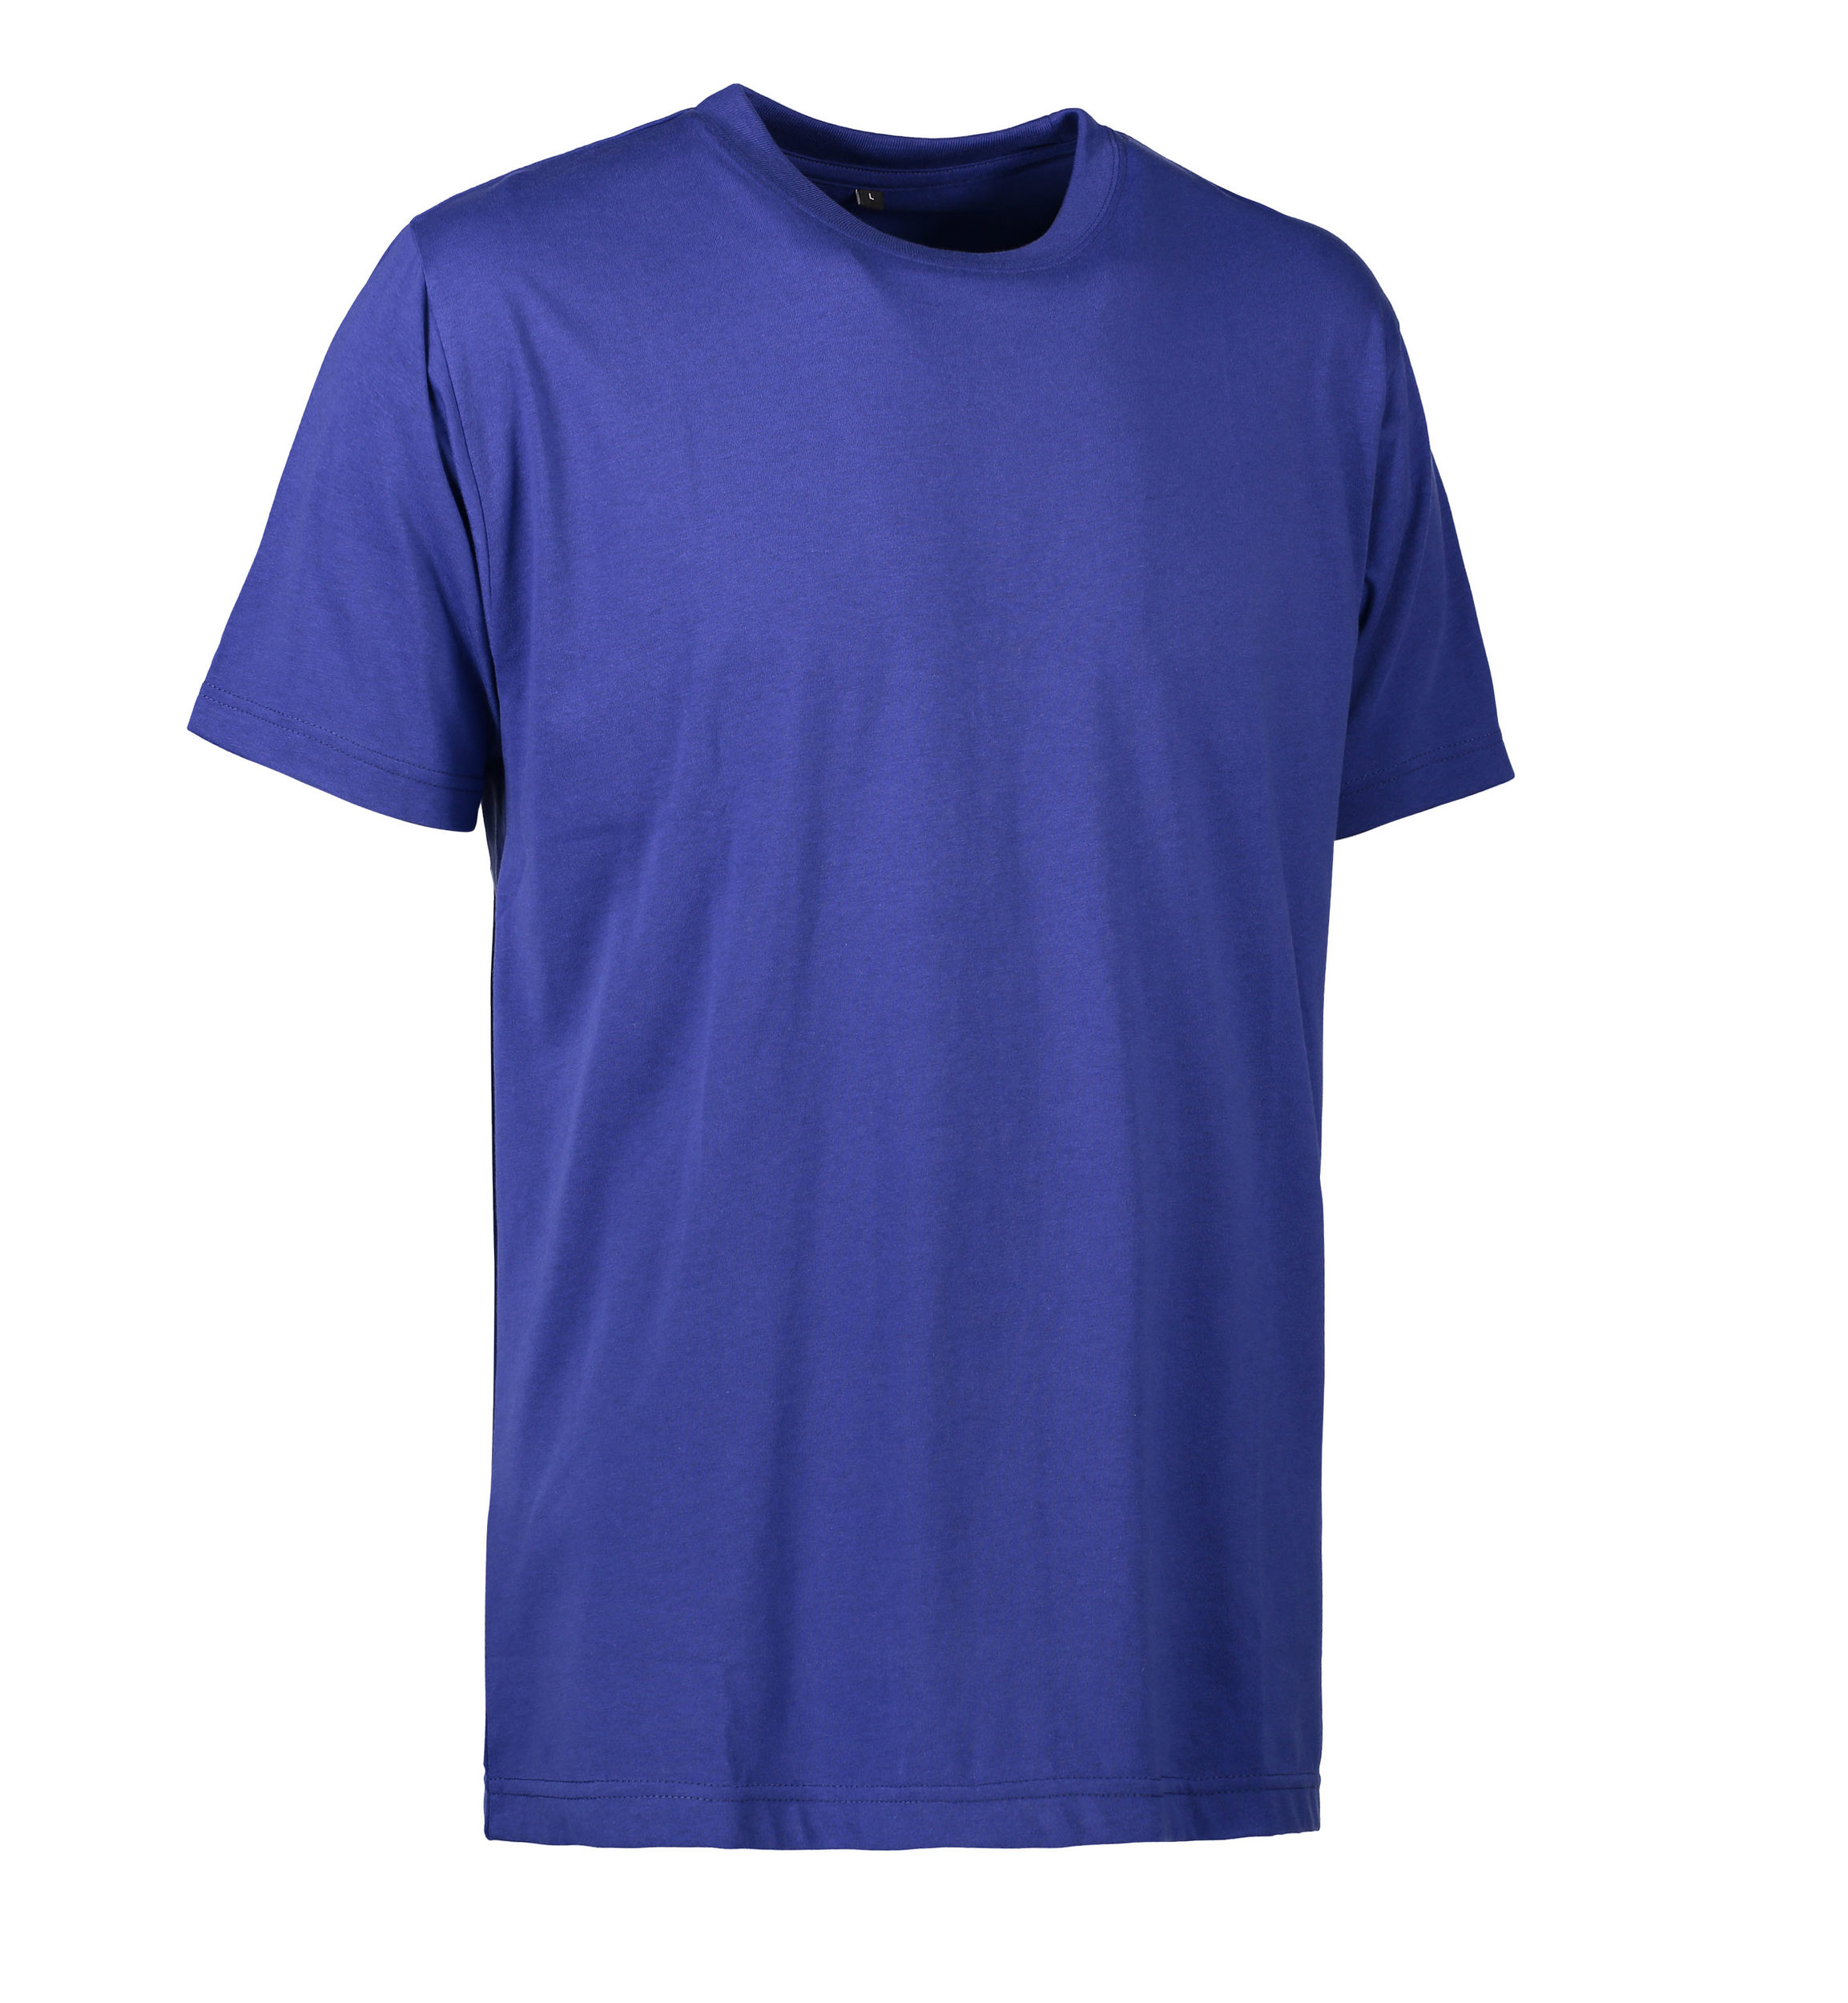 Se Slidstærk t-shirt i kongeblå til mænd - XL hos Sygeplejebutikken.dk